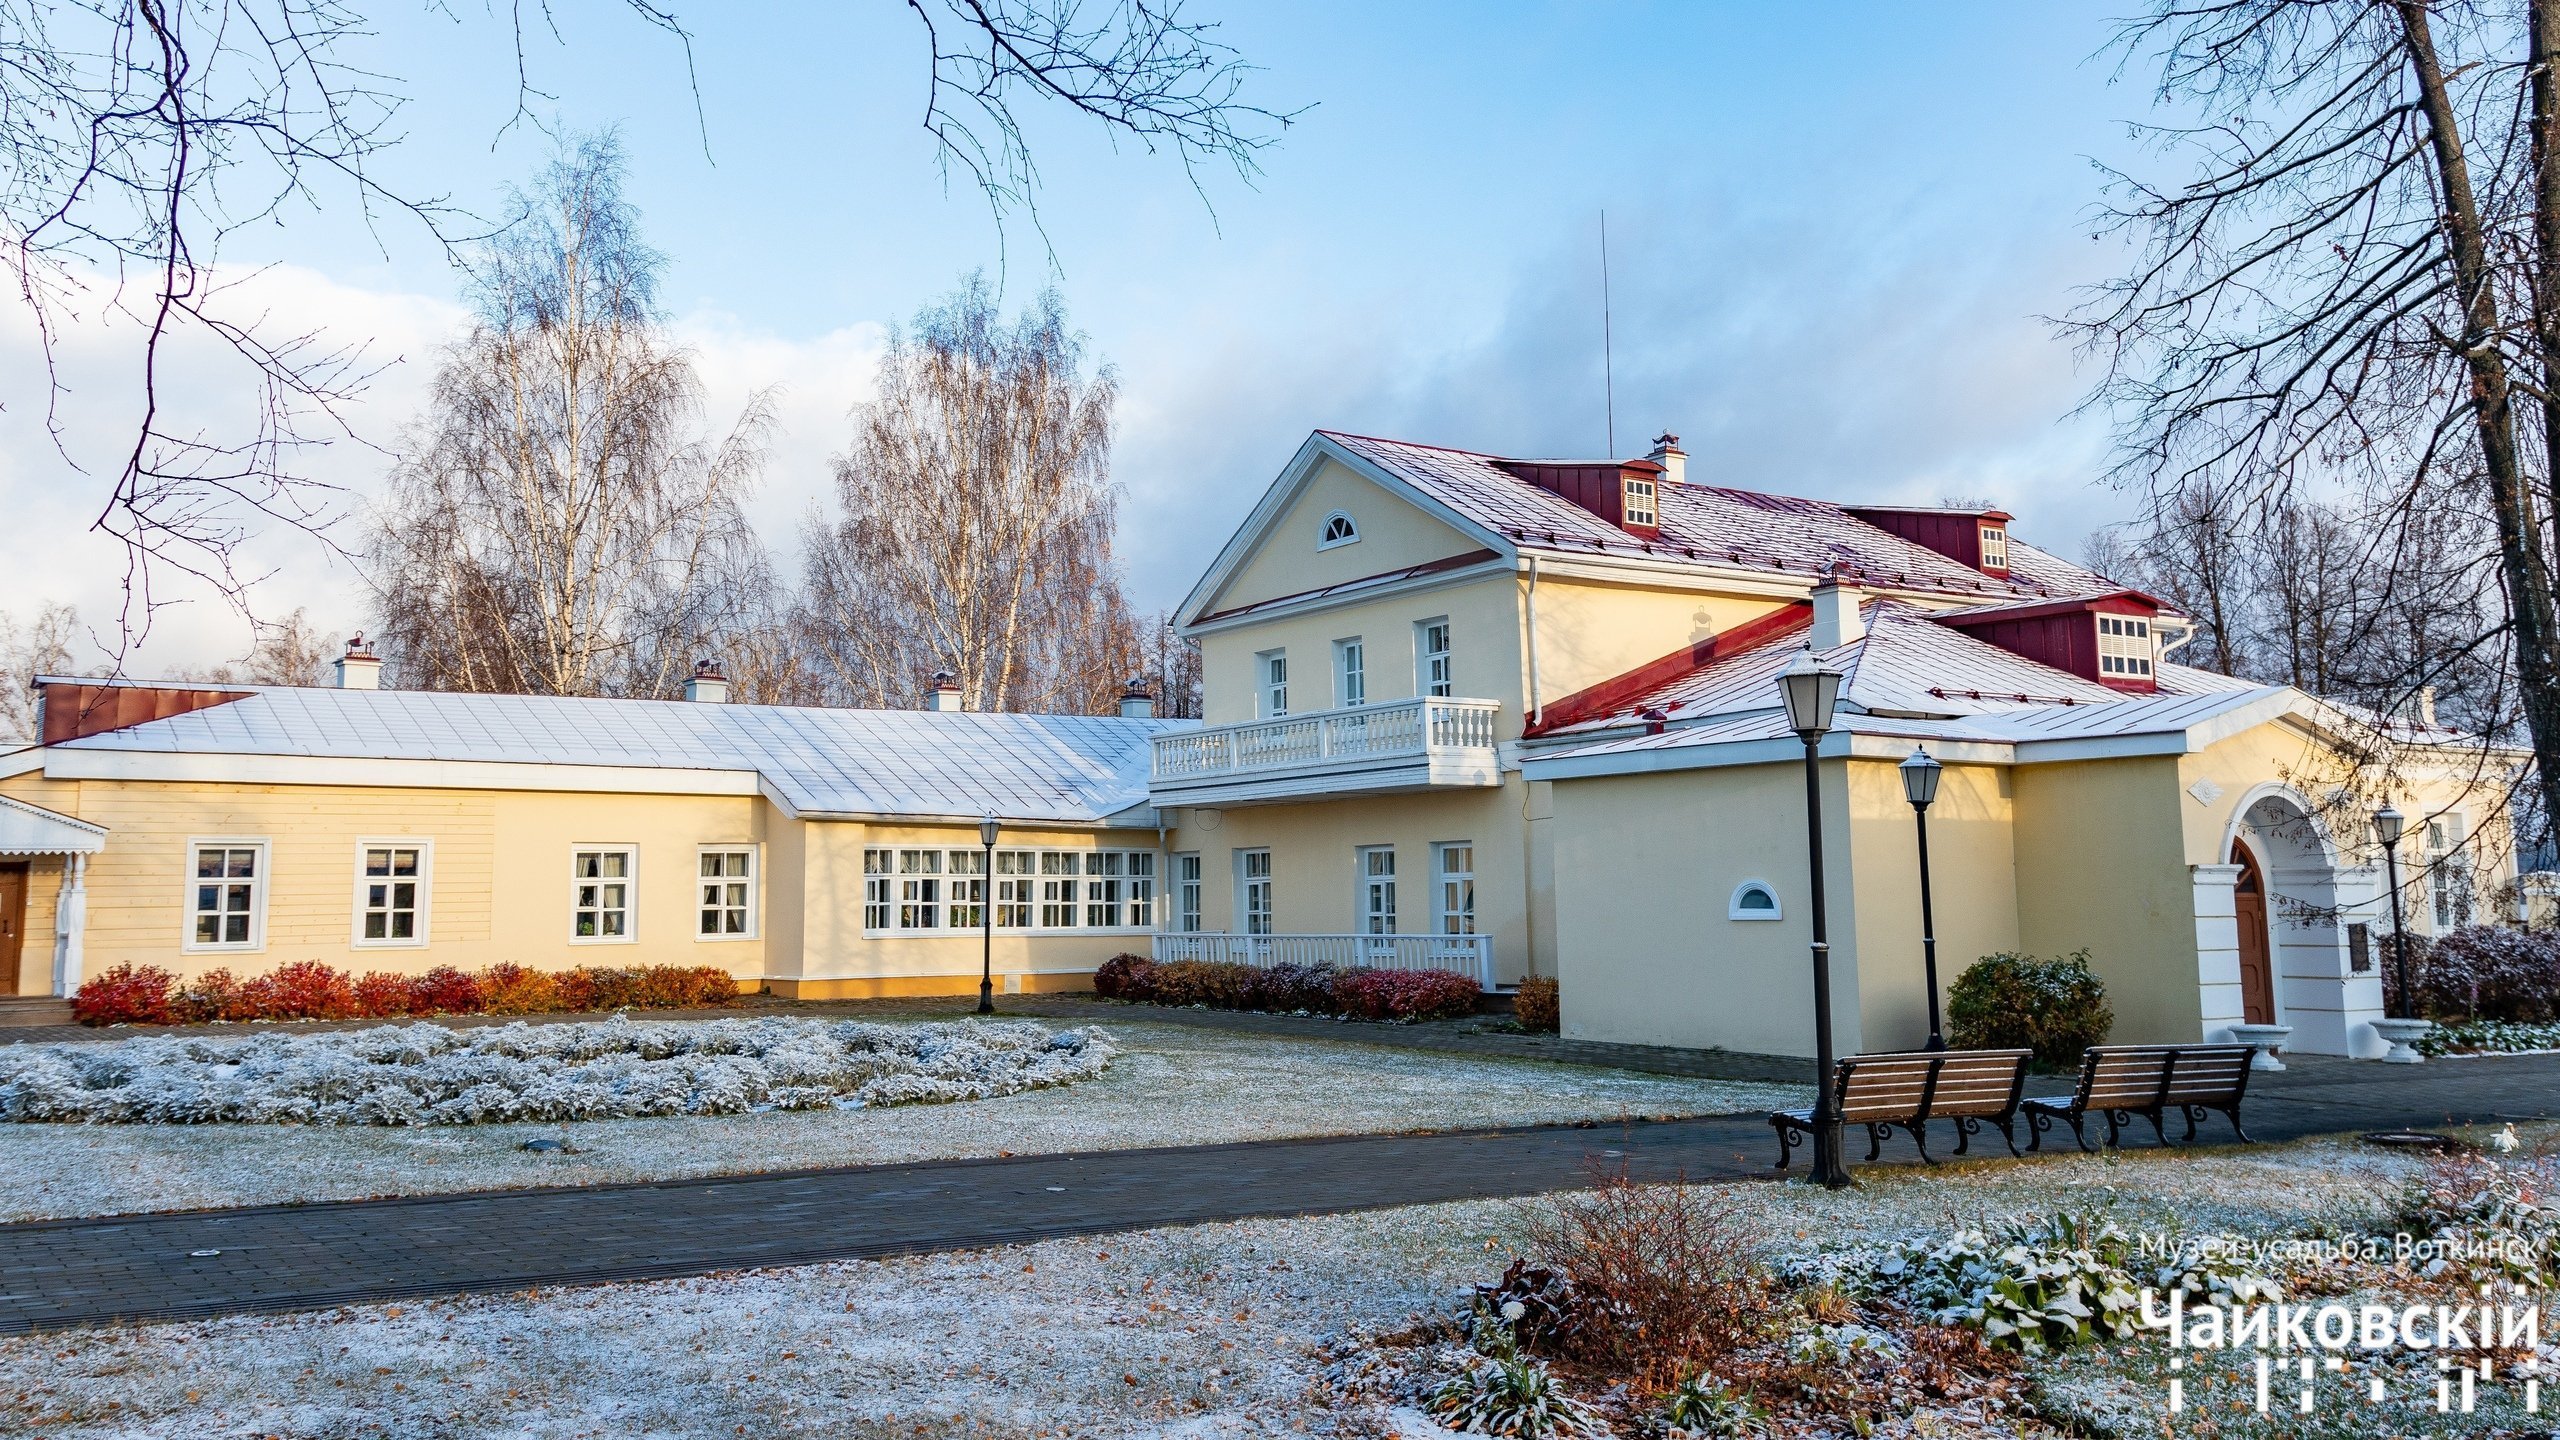 

Трехметровая ледяная ёлка появится на территории музея-усадьбы Чайковского в Воткинске

